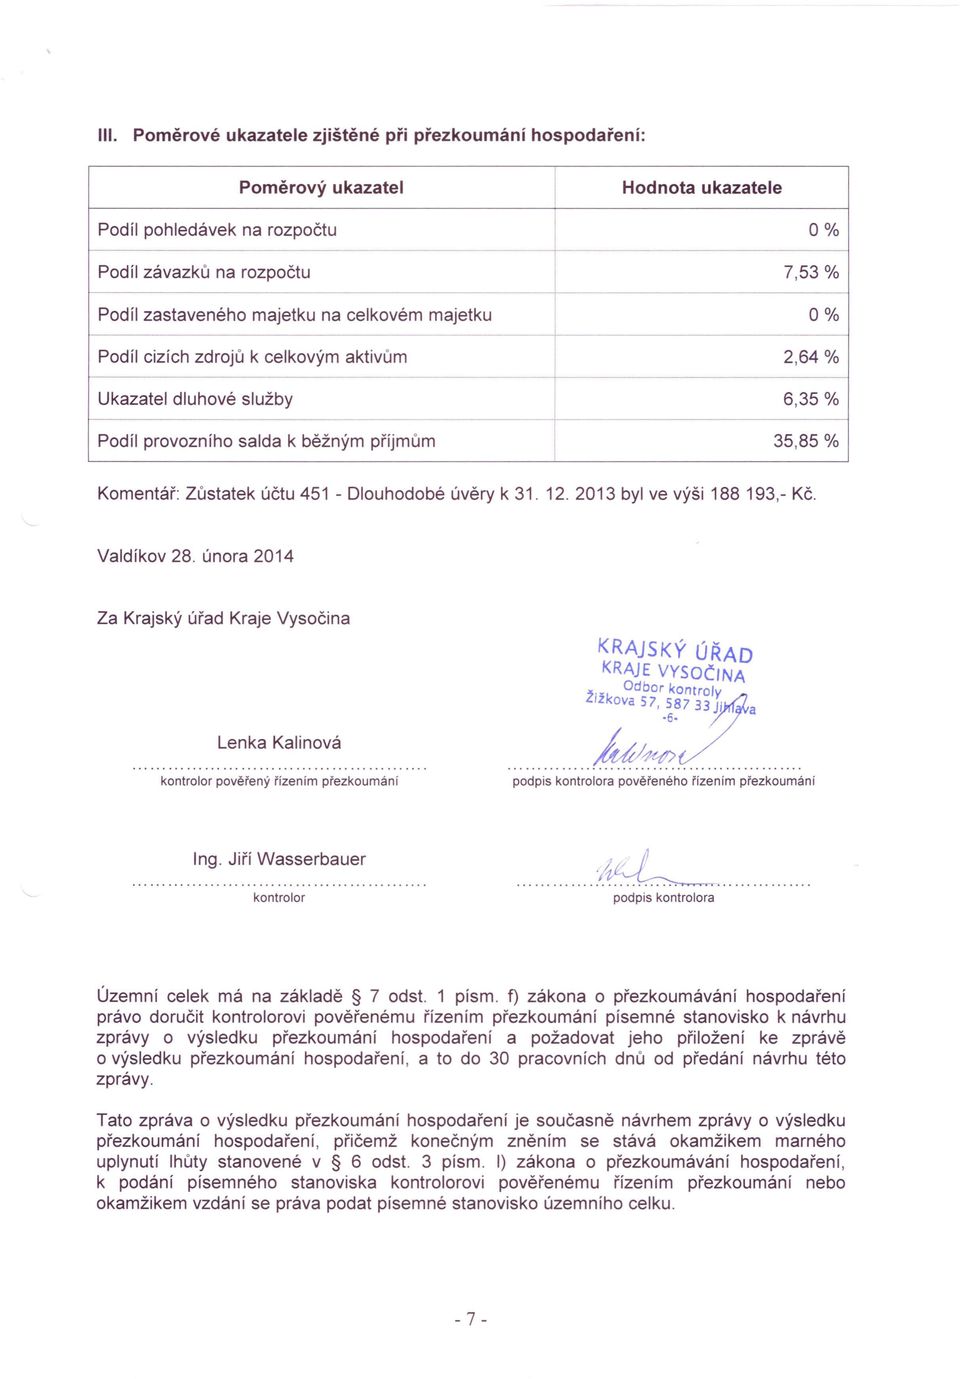 Podíl provozního salda k běžným příjmům 35,85 % Komentář: Zůstatek účtu 451 - Dlouhodobé úvěry k 31. 12. 2013 byl ve výši 188 193,- Kč. Valdíkov 28.